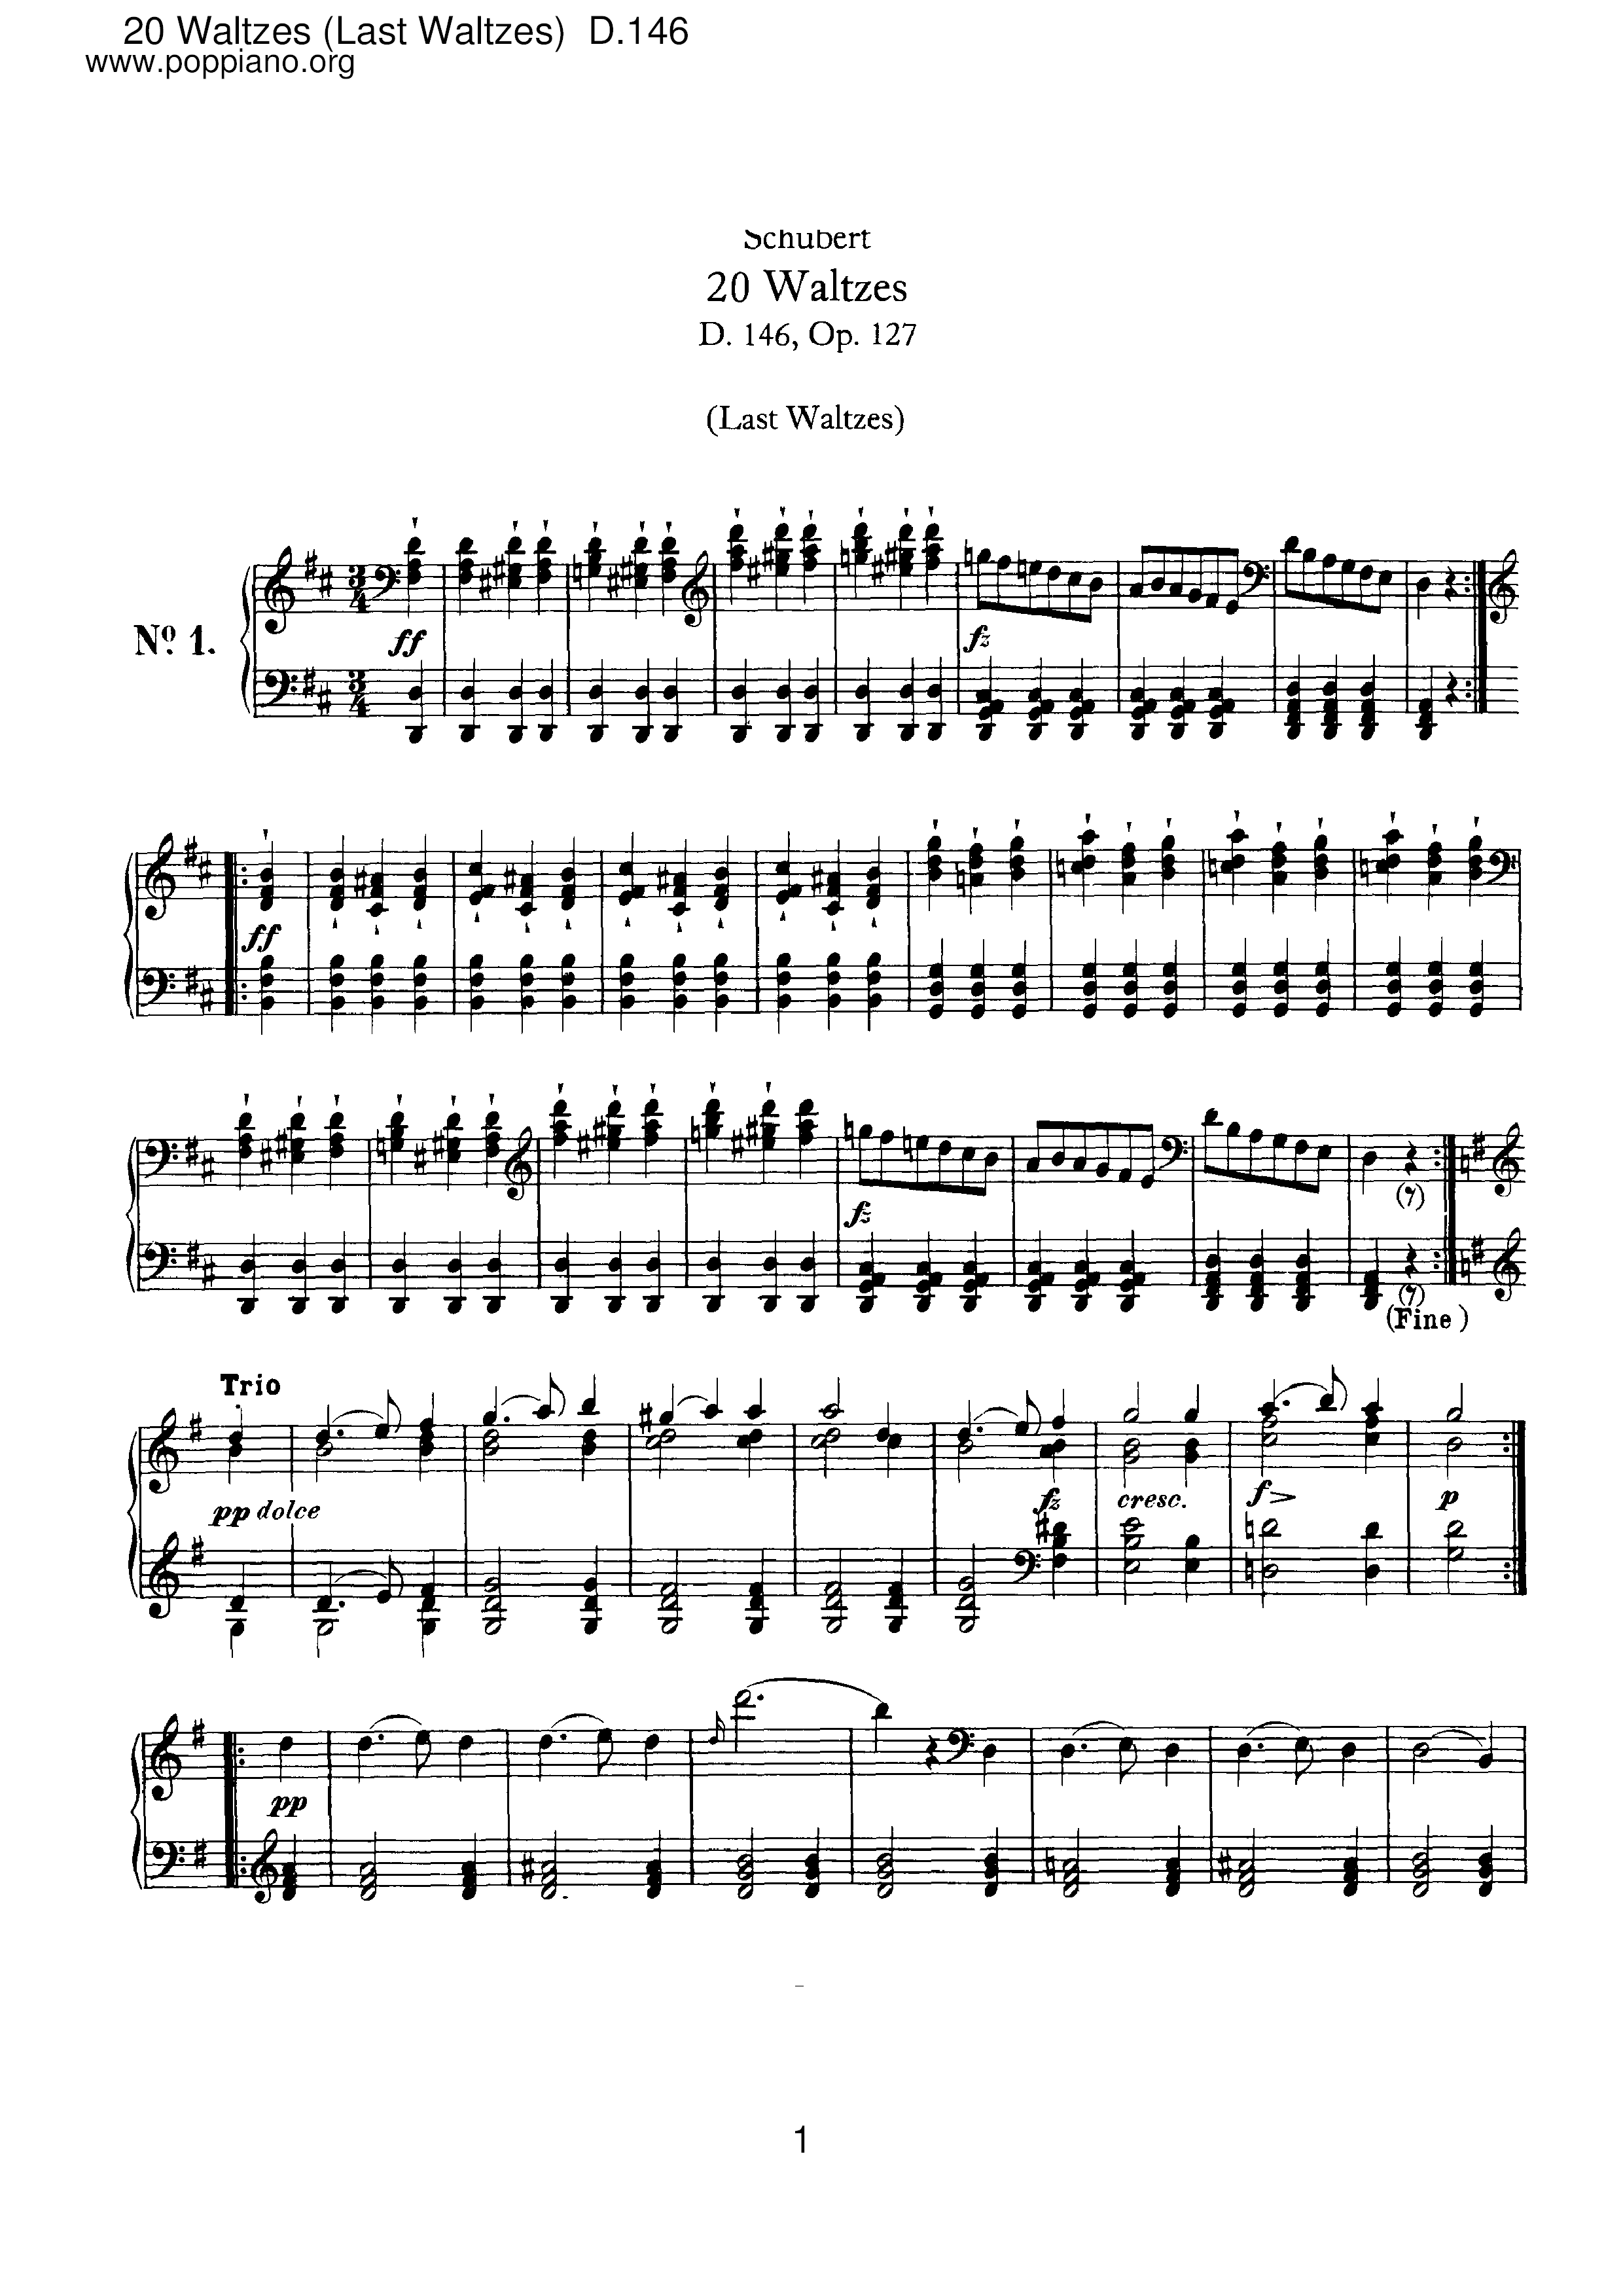 20 Waltzes (Last Waltzes), D.146 (Op.127)ピアノ譜